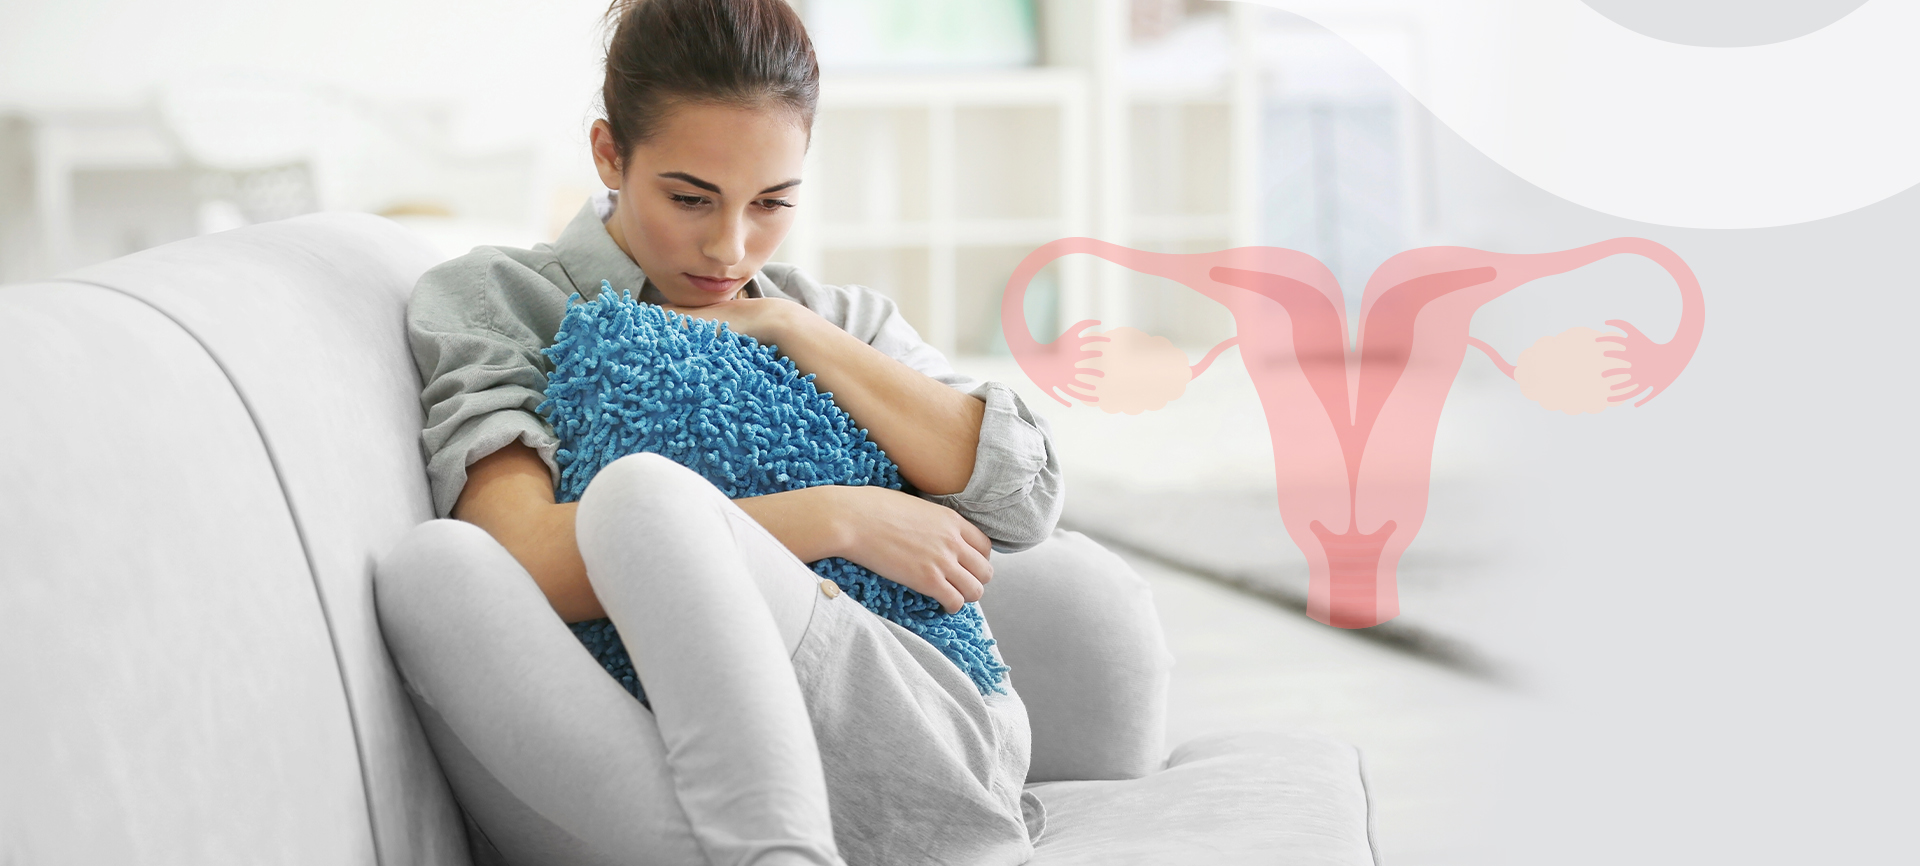 Útero bicorno e infertilidade: qual a relação?